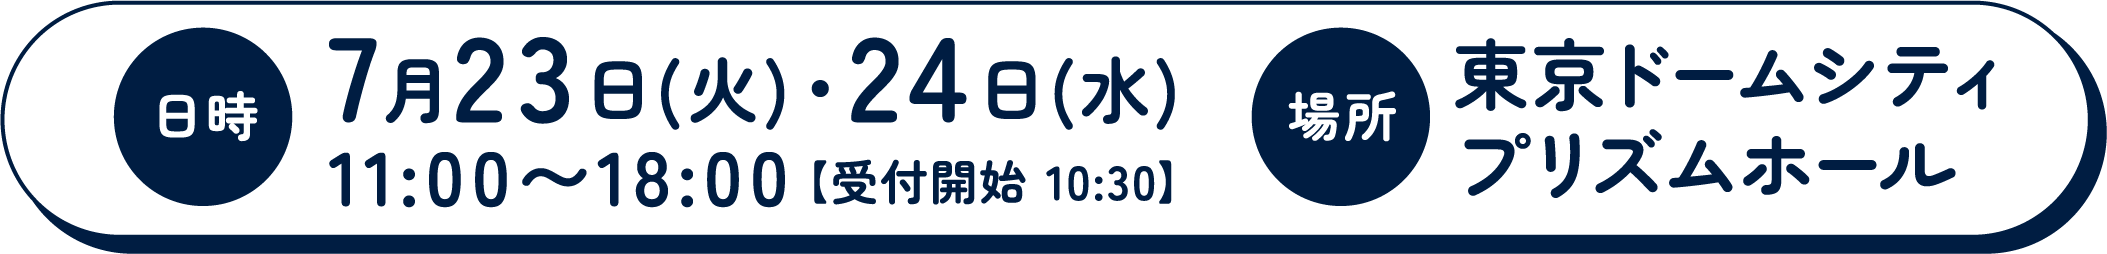 日時 7月23日(火)・24日(水)11:00〜18:00【受付開始 10:30】　場所 東京ドームシティ プリズムホール